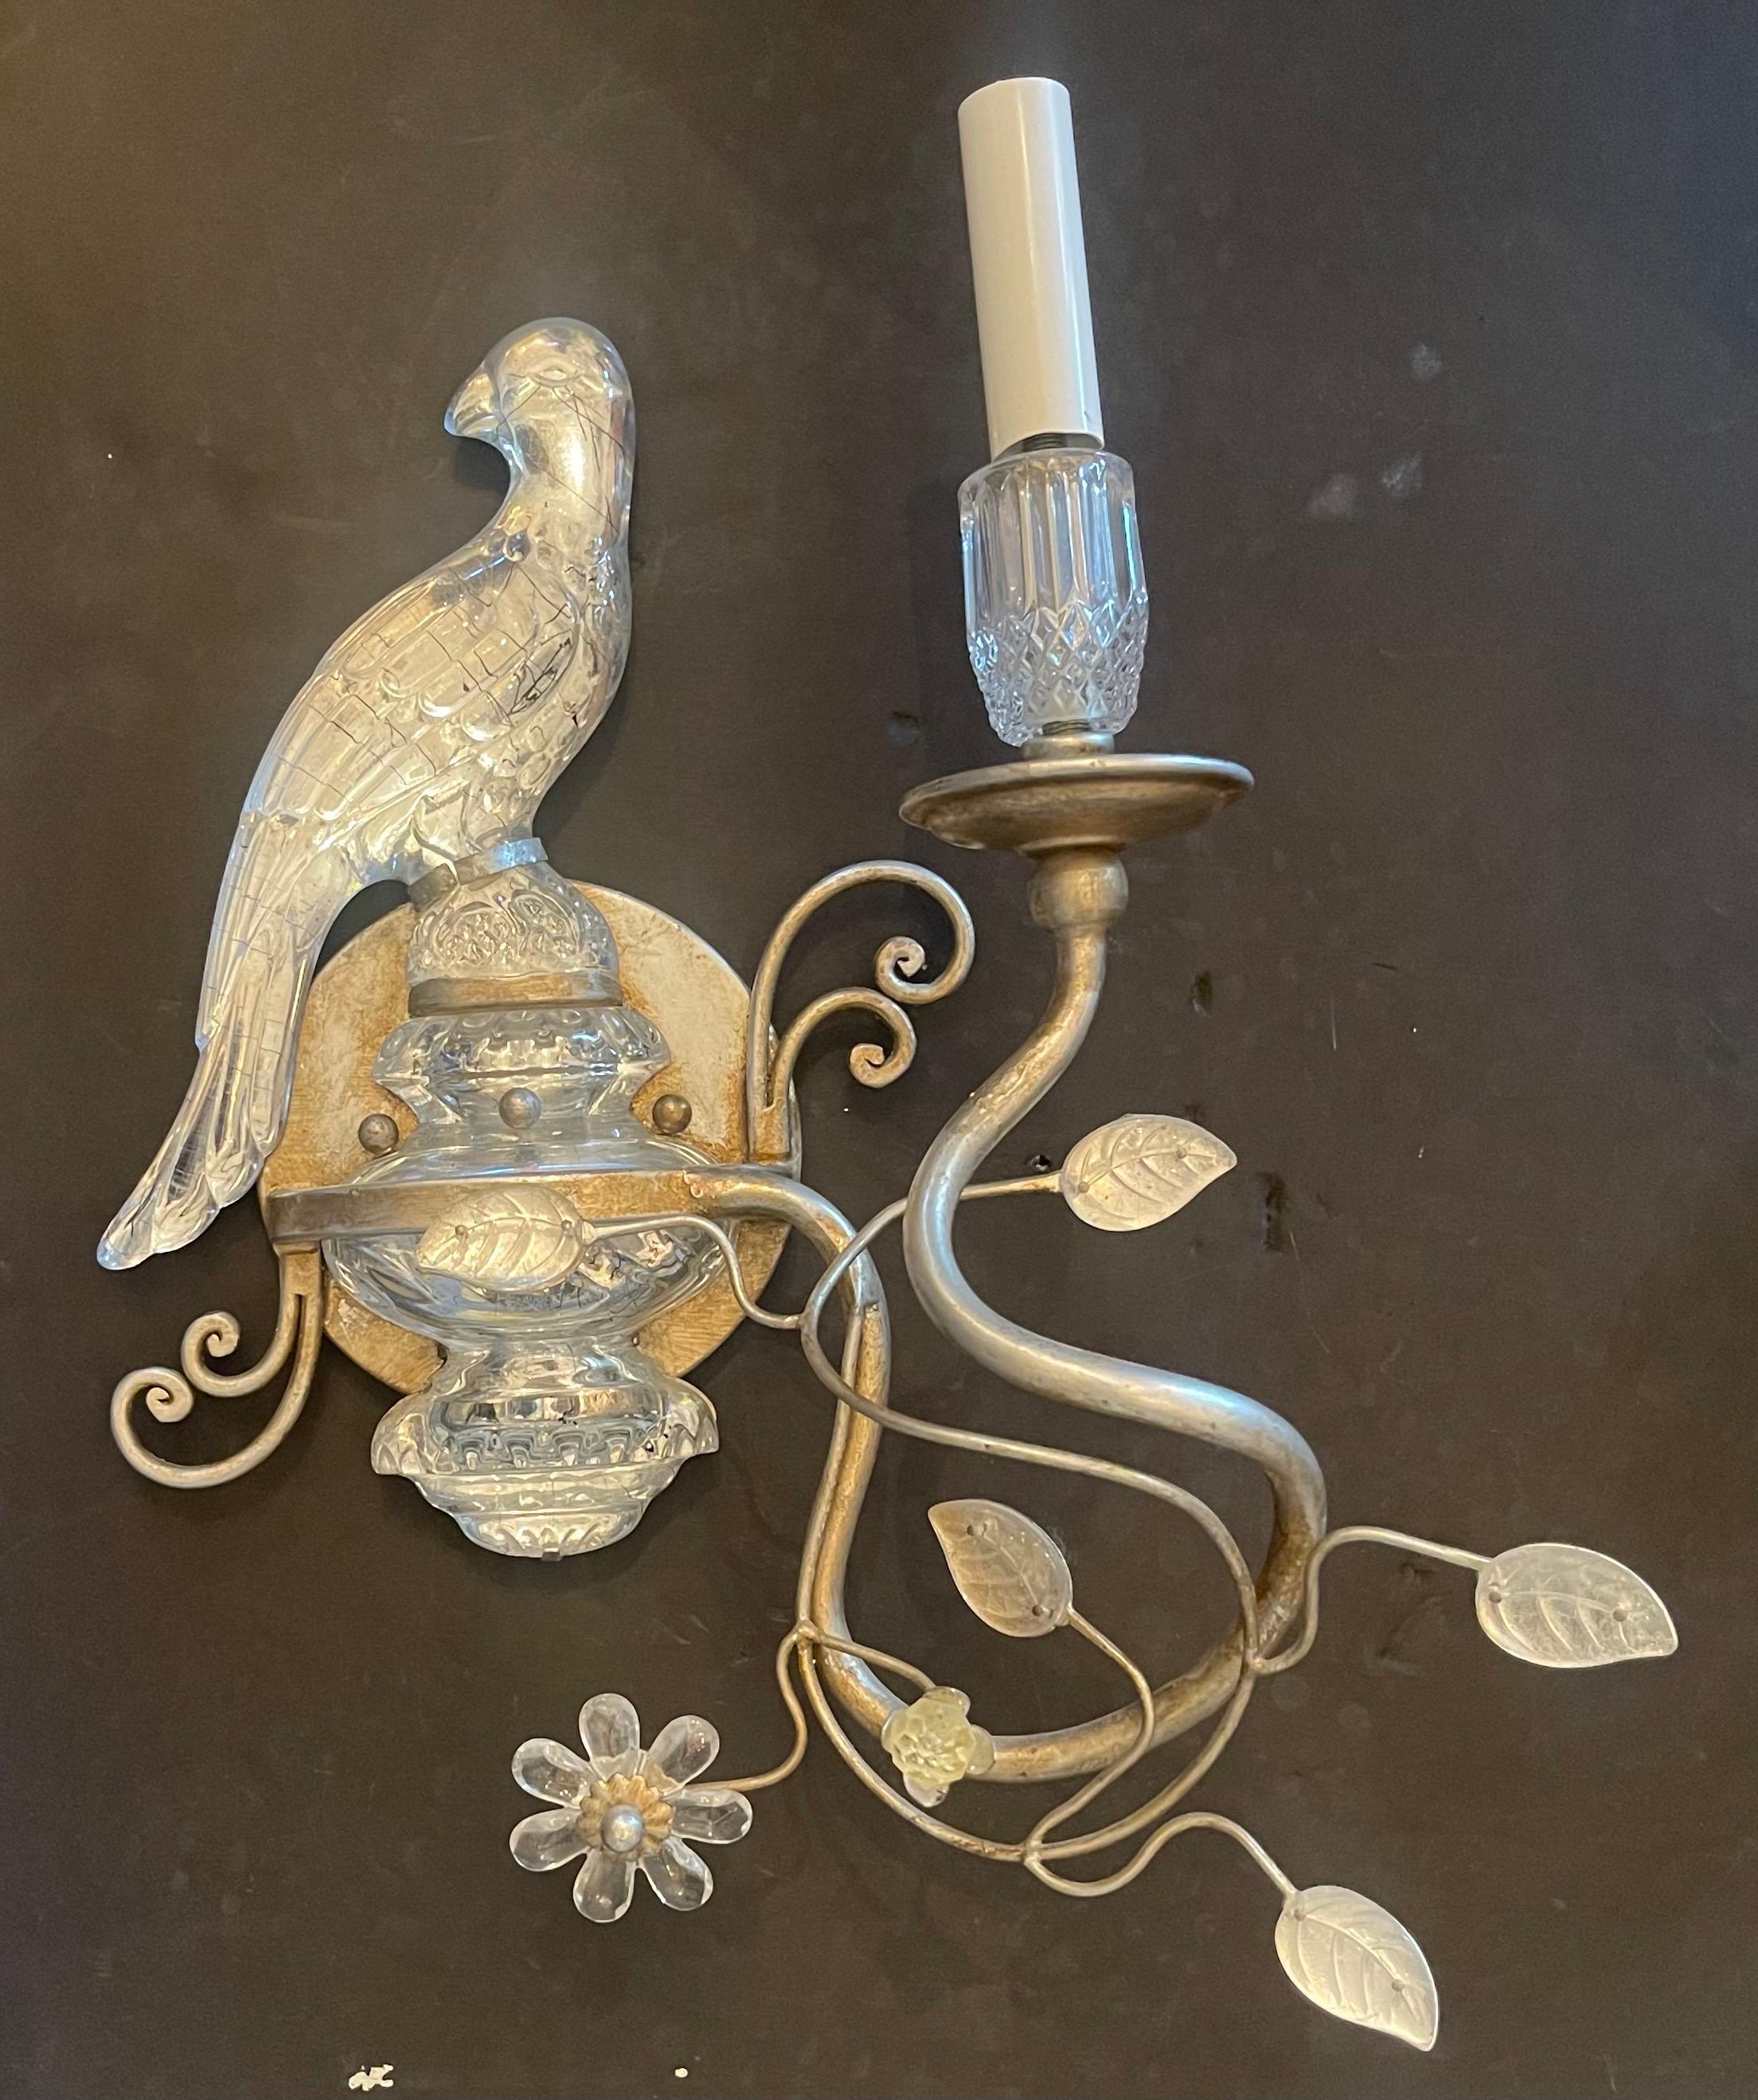 Eine wunderbare Vintage Paar Baguès Stil Silber vergoldet Faux Bergkristall / Kunstglas Papagei / Vogel ruht auf einer Urne Sconces, die jeweils mit einem neuen Kandelaber Sockel bereit, mit Montage-Hardware installieren verdrahtet 